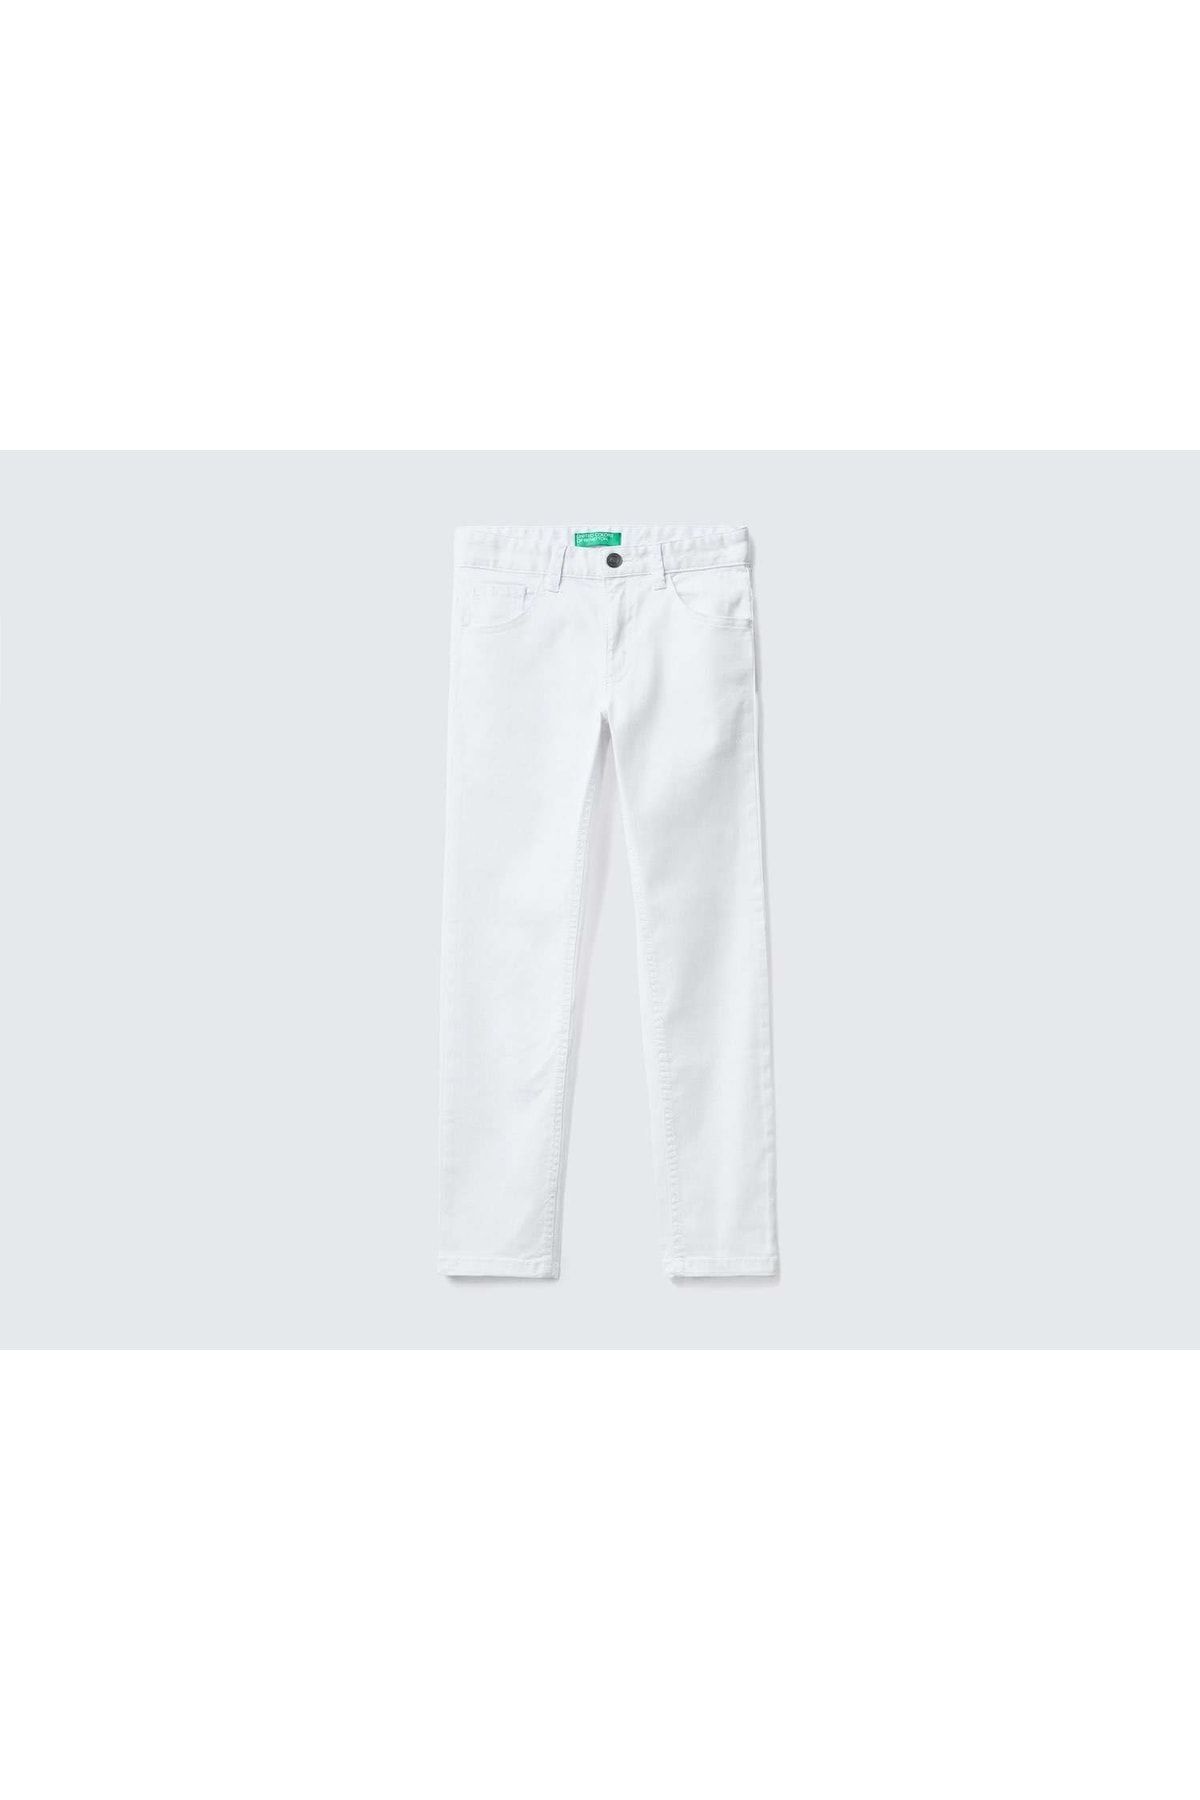 United Colors of Benetton Erkek Çocuk-beyaz-5 Cepli Gabardin Pantolon